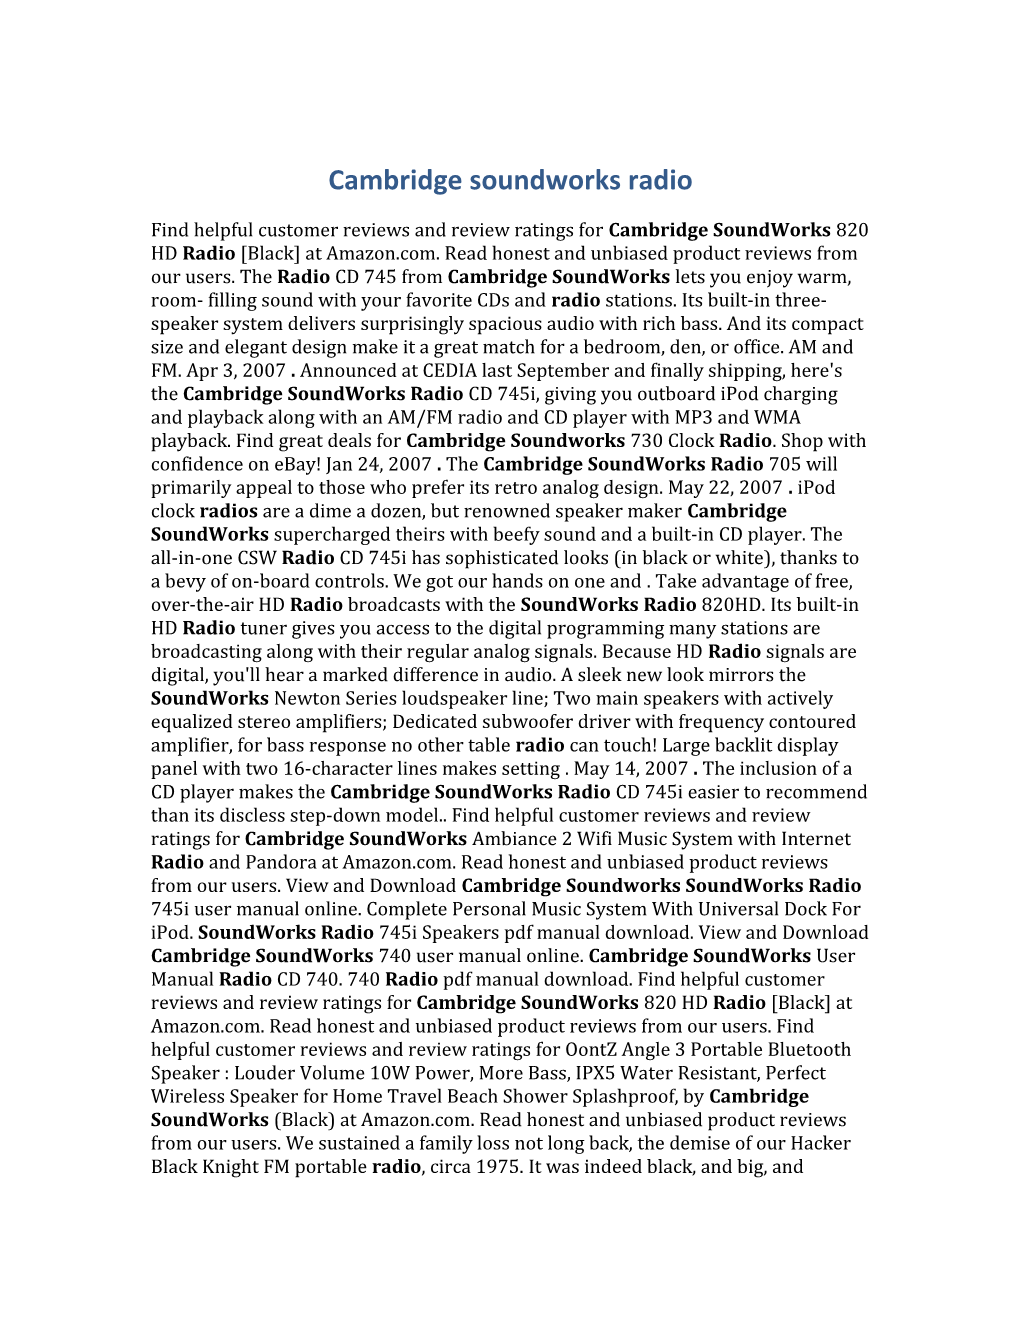 Cambridge Soundworks Radio